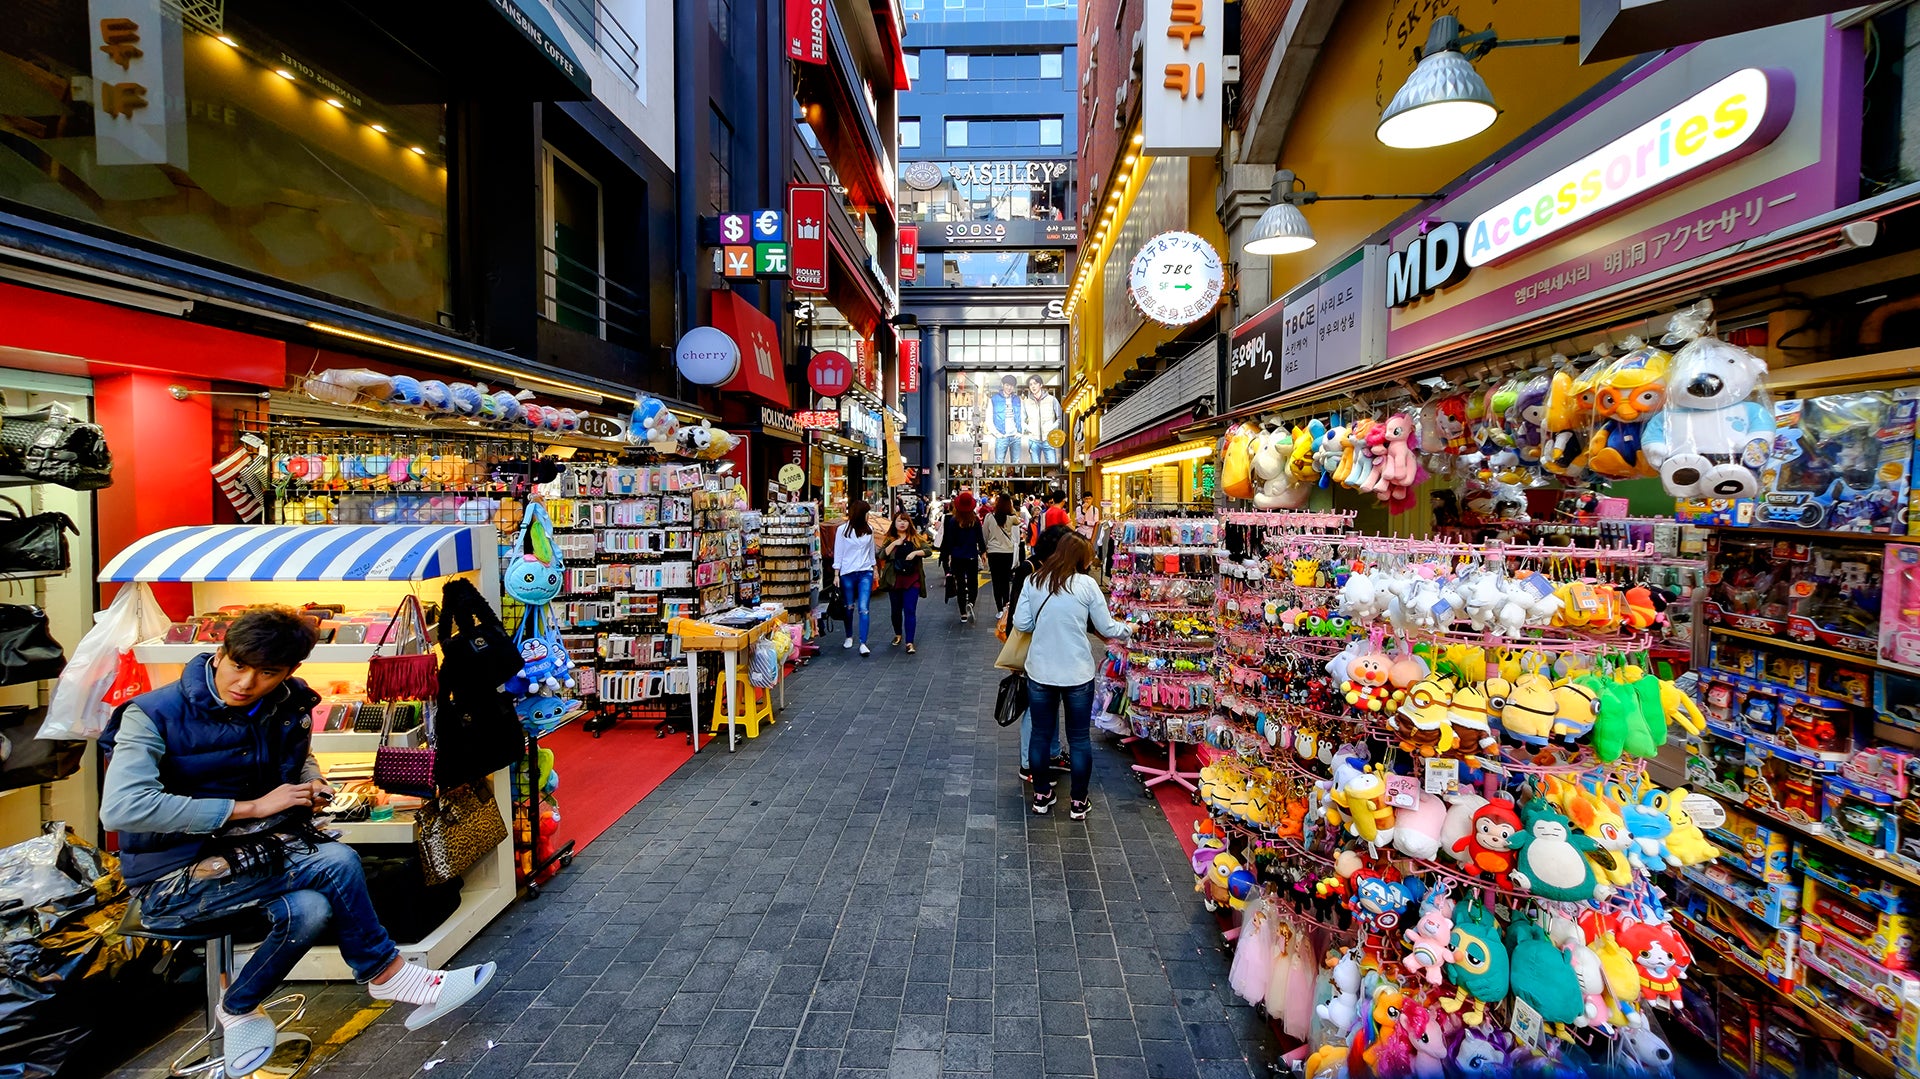 Lo más famoso del lugar es el comercio en las calles. Los turistas caminan por las calles comprando en su vecindario.